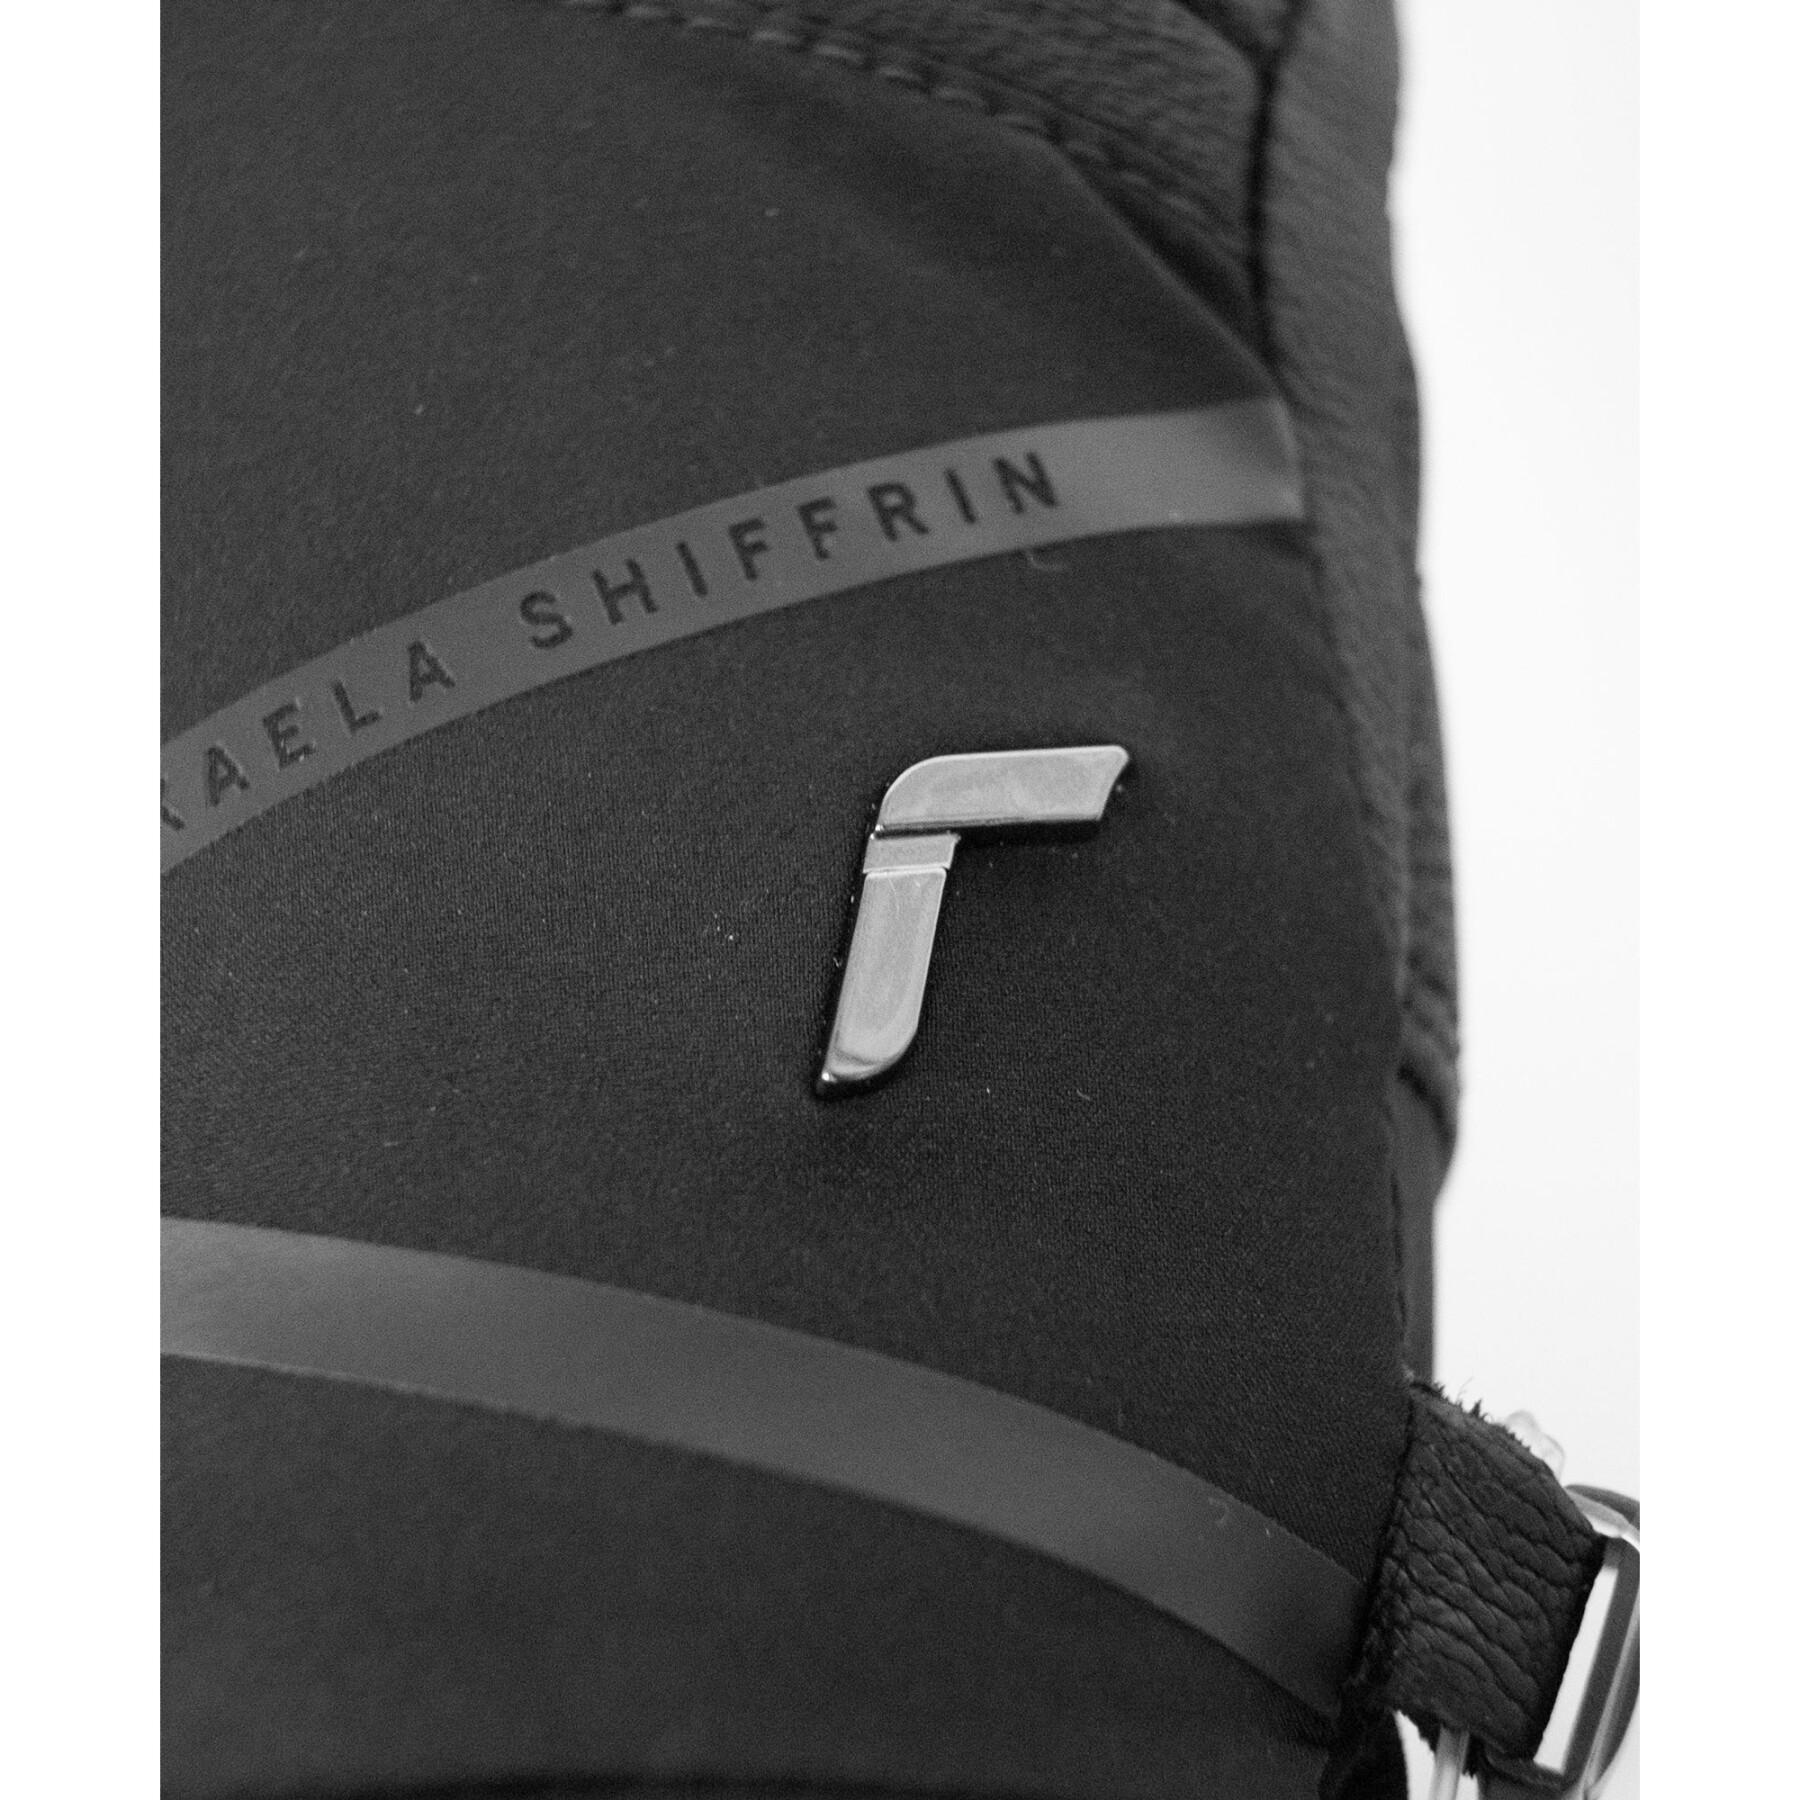 Handschoenen Reusch Mikaela Shiffrin R-TEX® XT